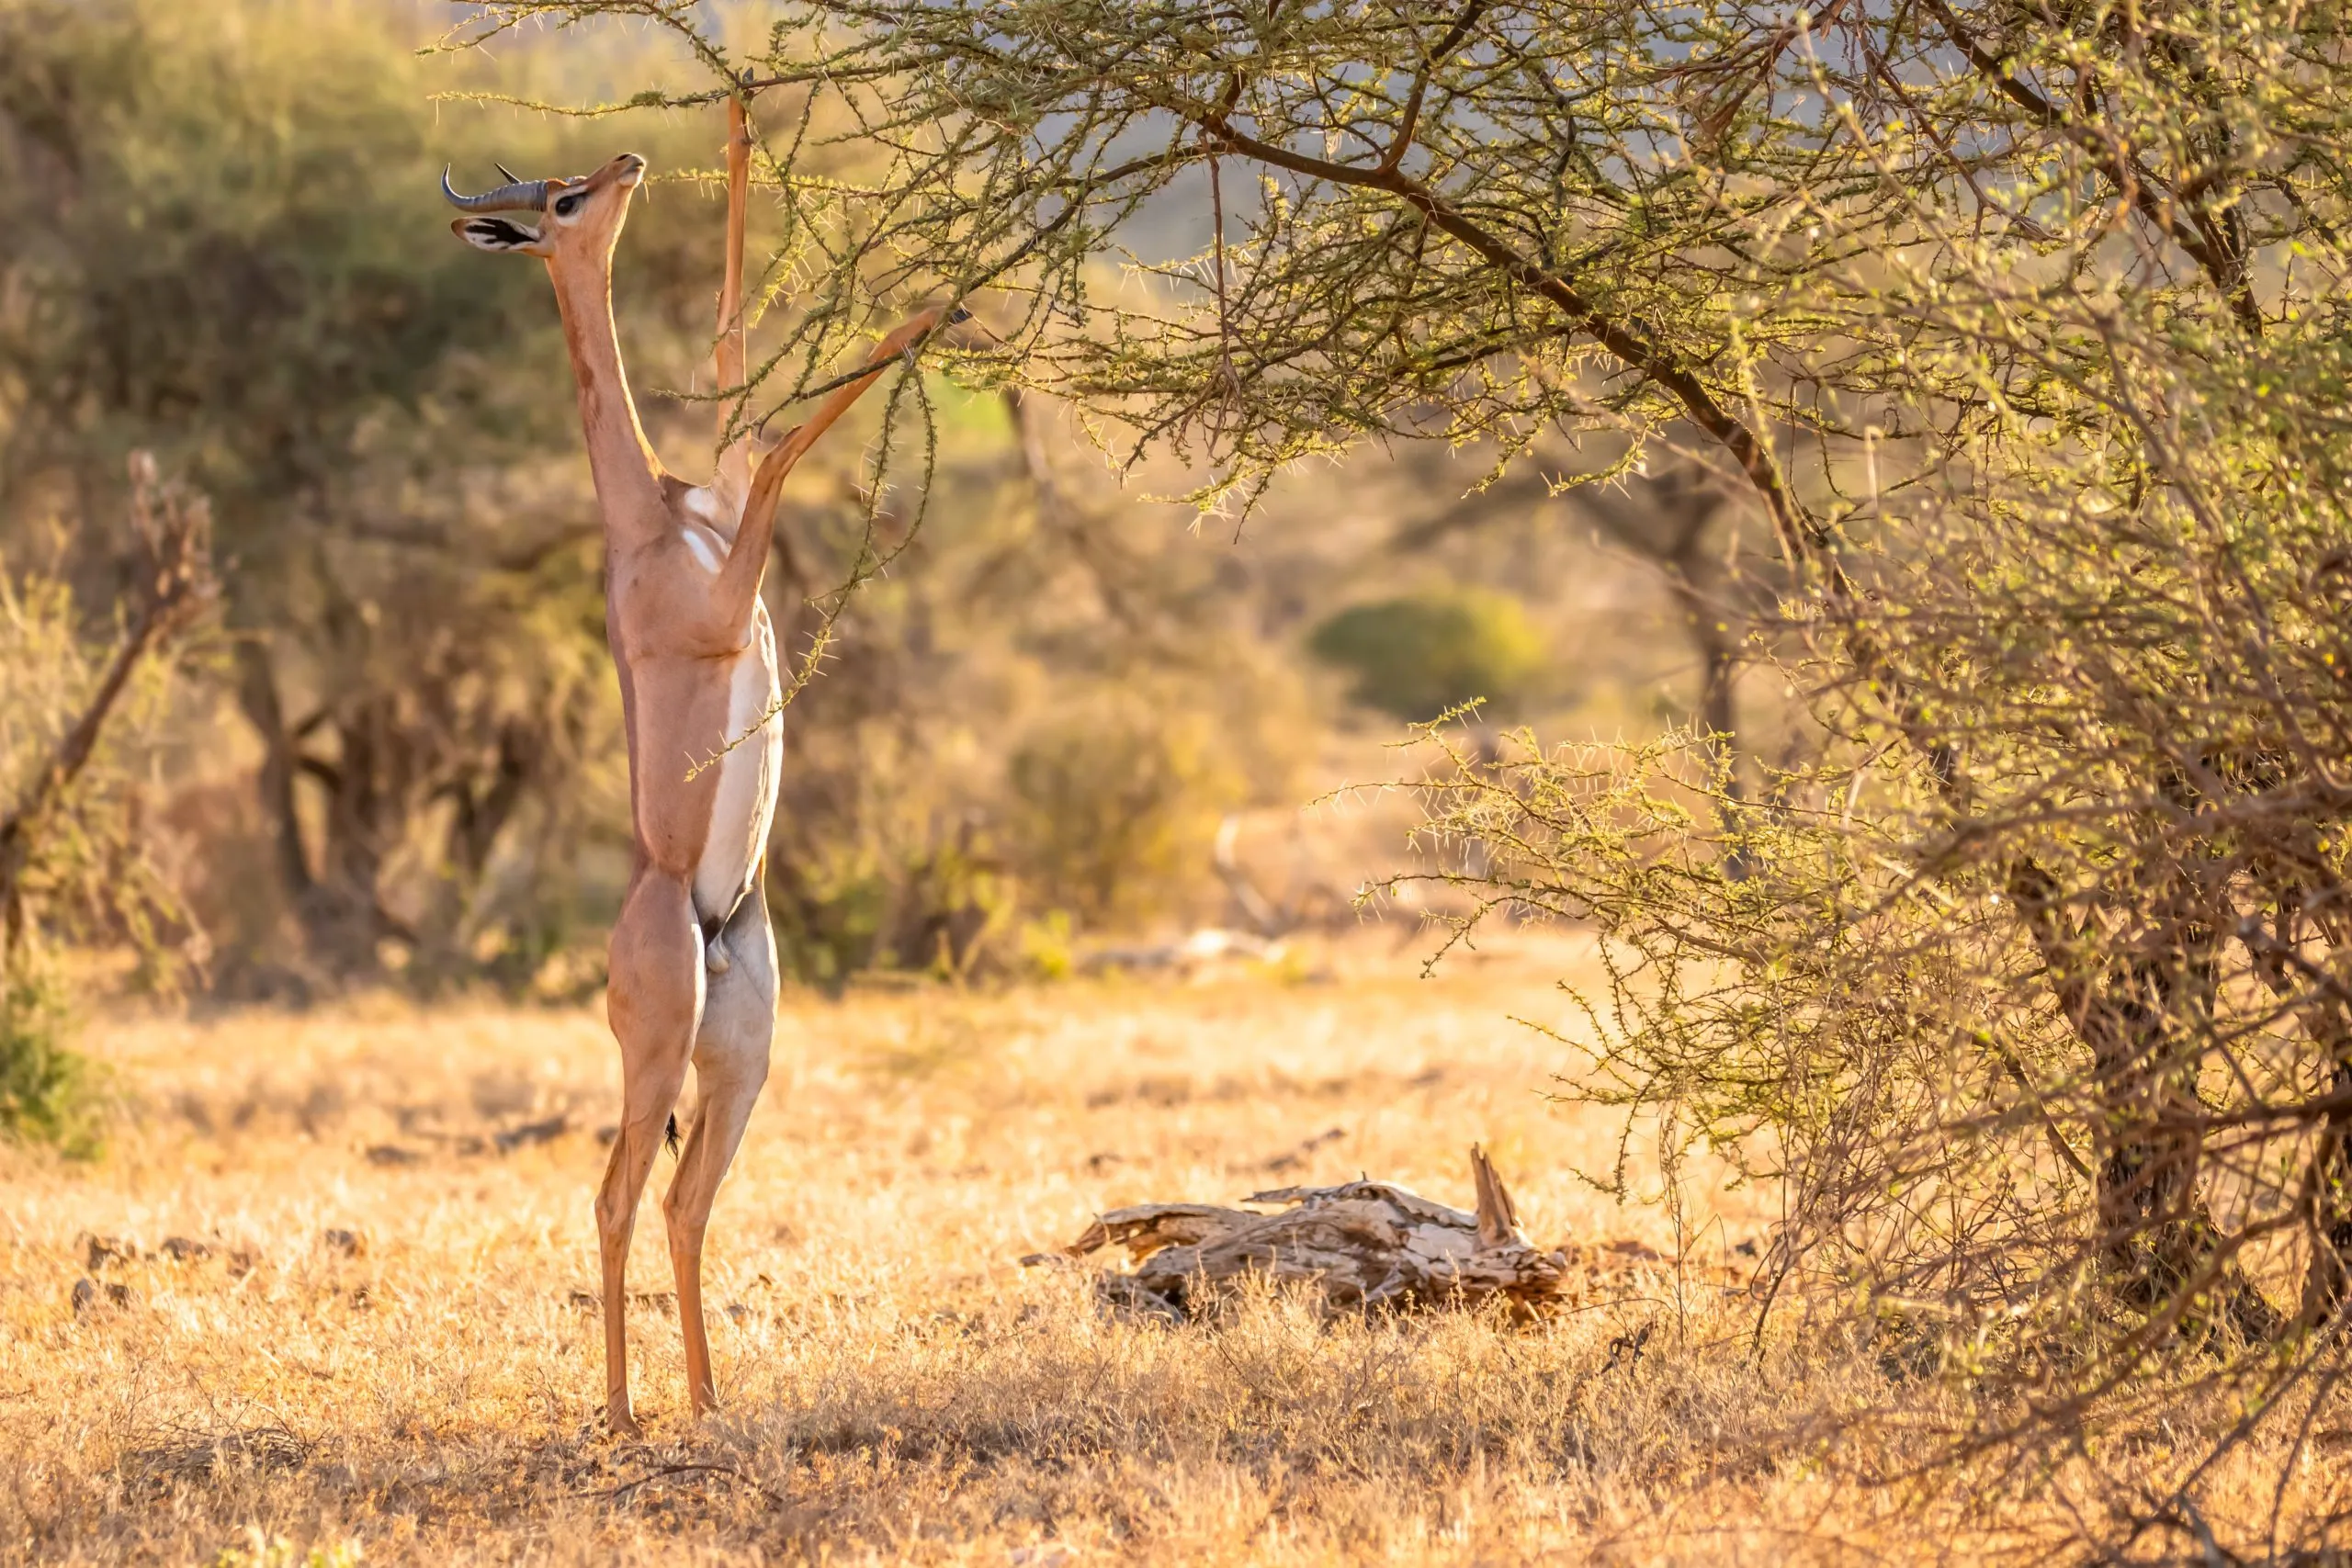 Gerenuk, Litocranius walleri ook giraf gazelle, langnek antilope, lange slanke nek en ledematen, staat op achterpoten tijdens het eten van bladeren. Avondlijke afrikaanse kleuren. Samburu nationaal reservaat, Kenia